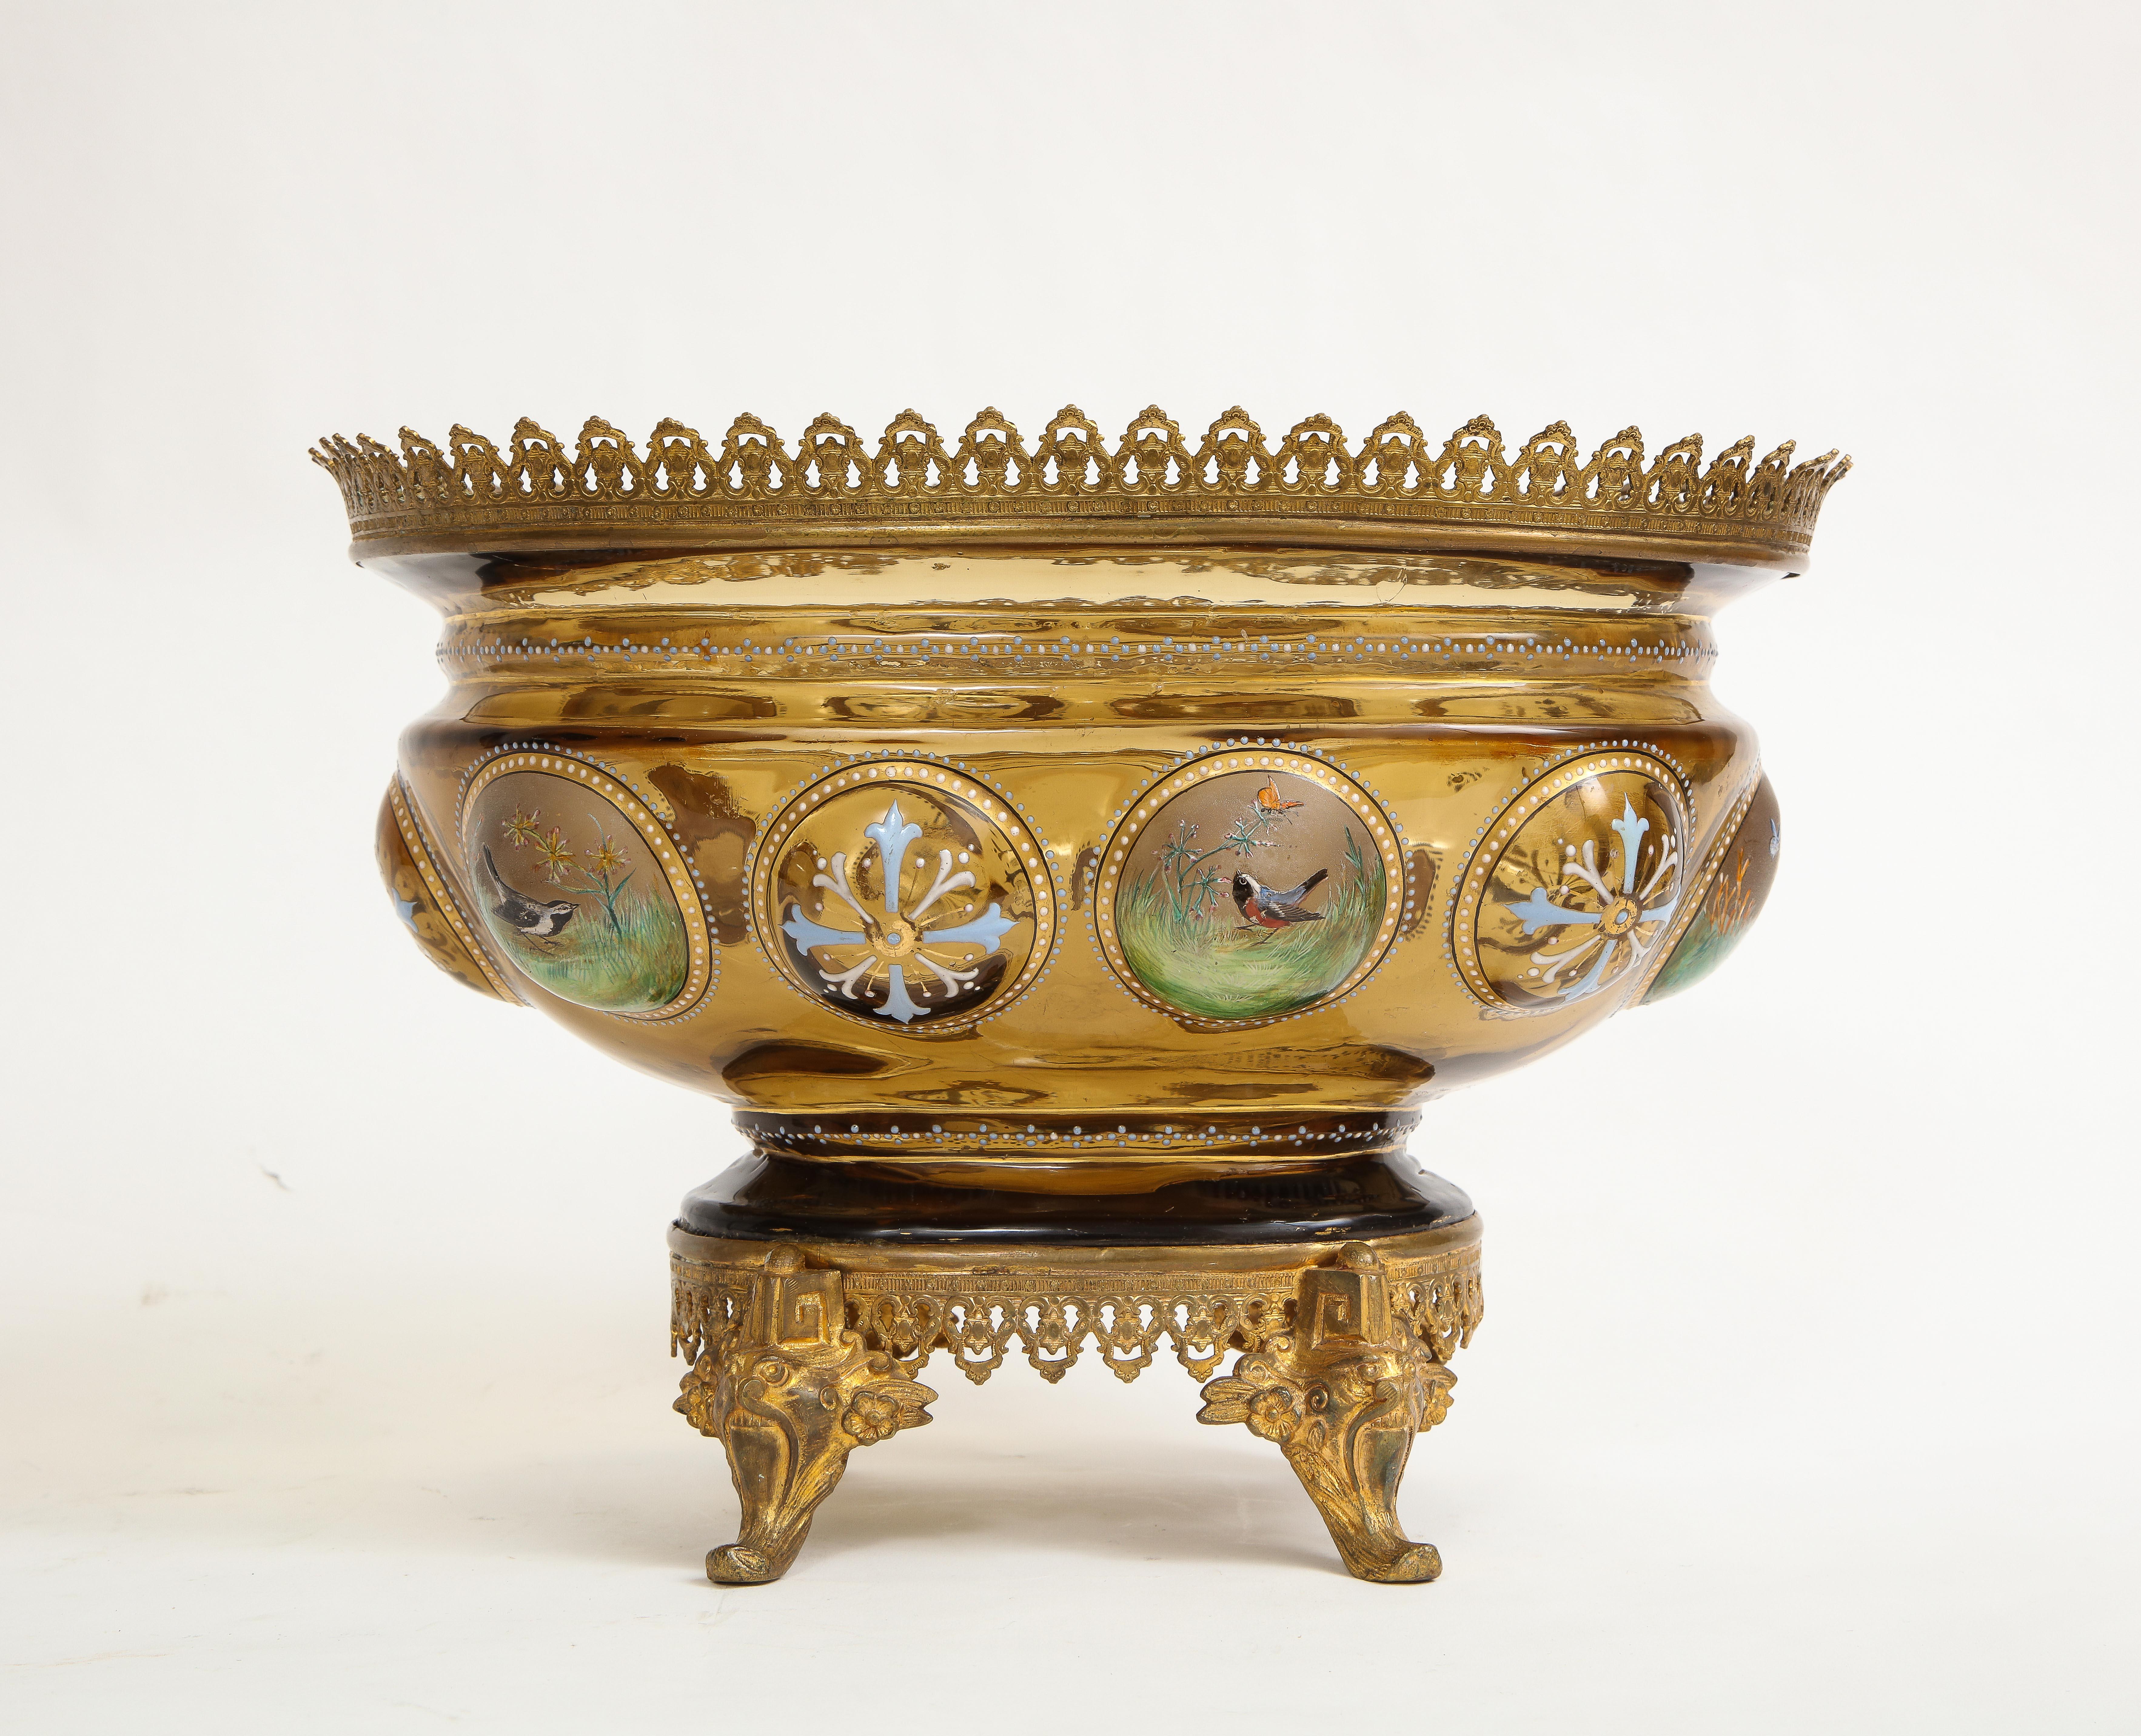 Ein antikes 19. Jahrhundert dore Bronze montiert Moser hell-amber farbigen Kristall und Emaille Tafelaufsatz / Schale. Das Kristall ist mundgeblasen und handgeschnitzt und mit einer Vielzahl von handgemalten Emaille-Dekoren von Vögeln,